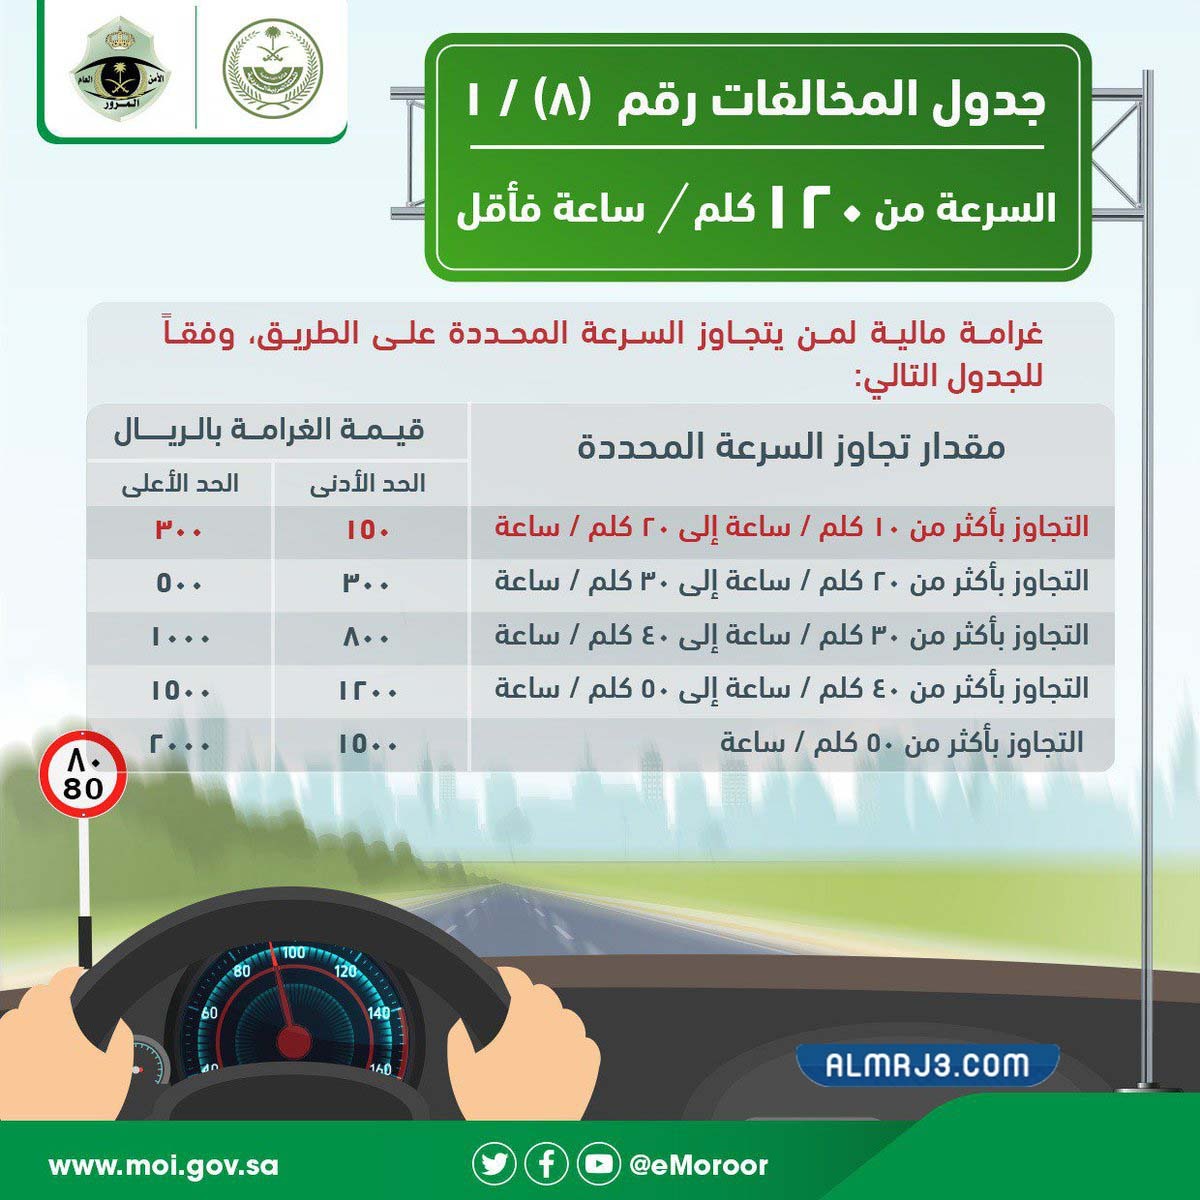 جدول مخالفات المرور للسرعة 120 كم / ساعة